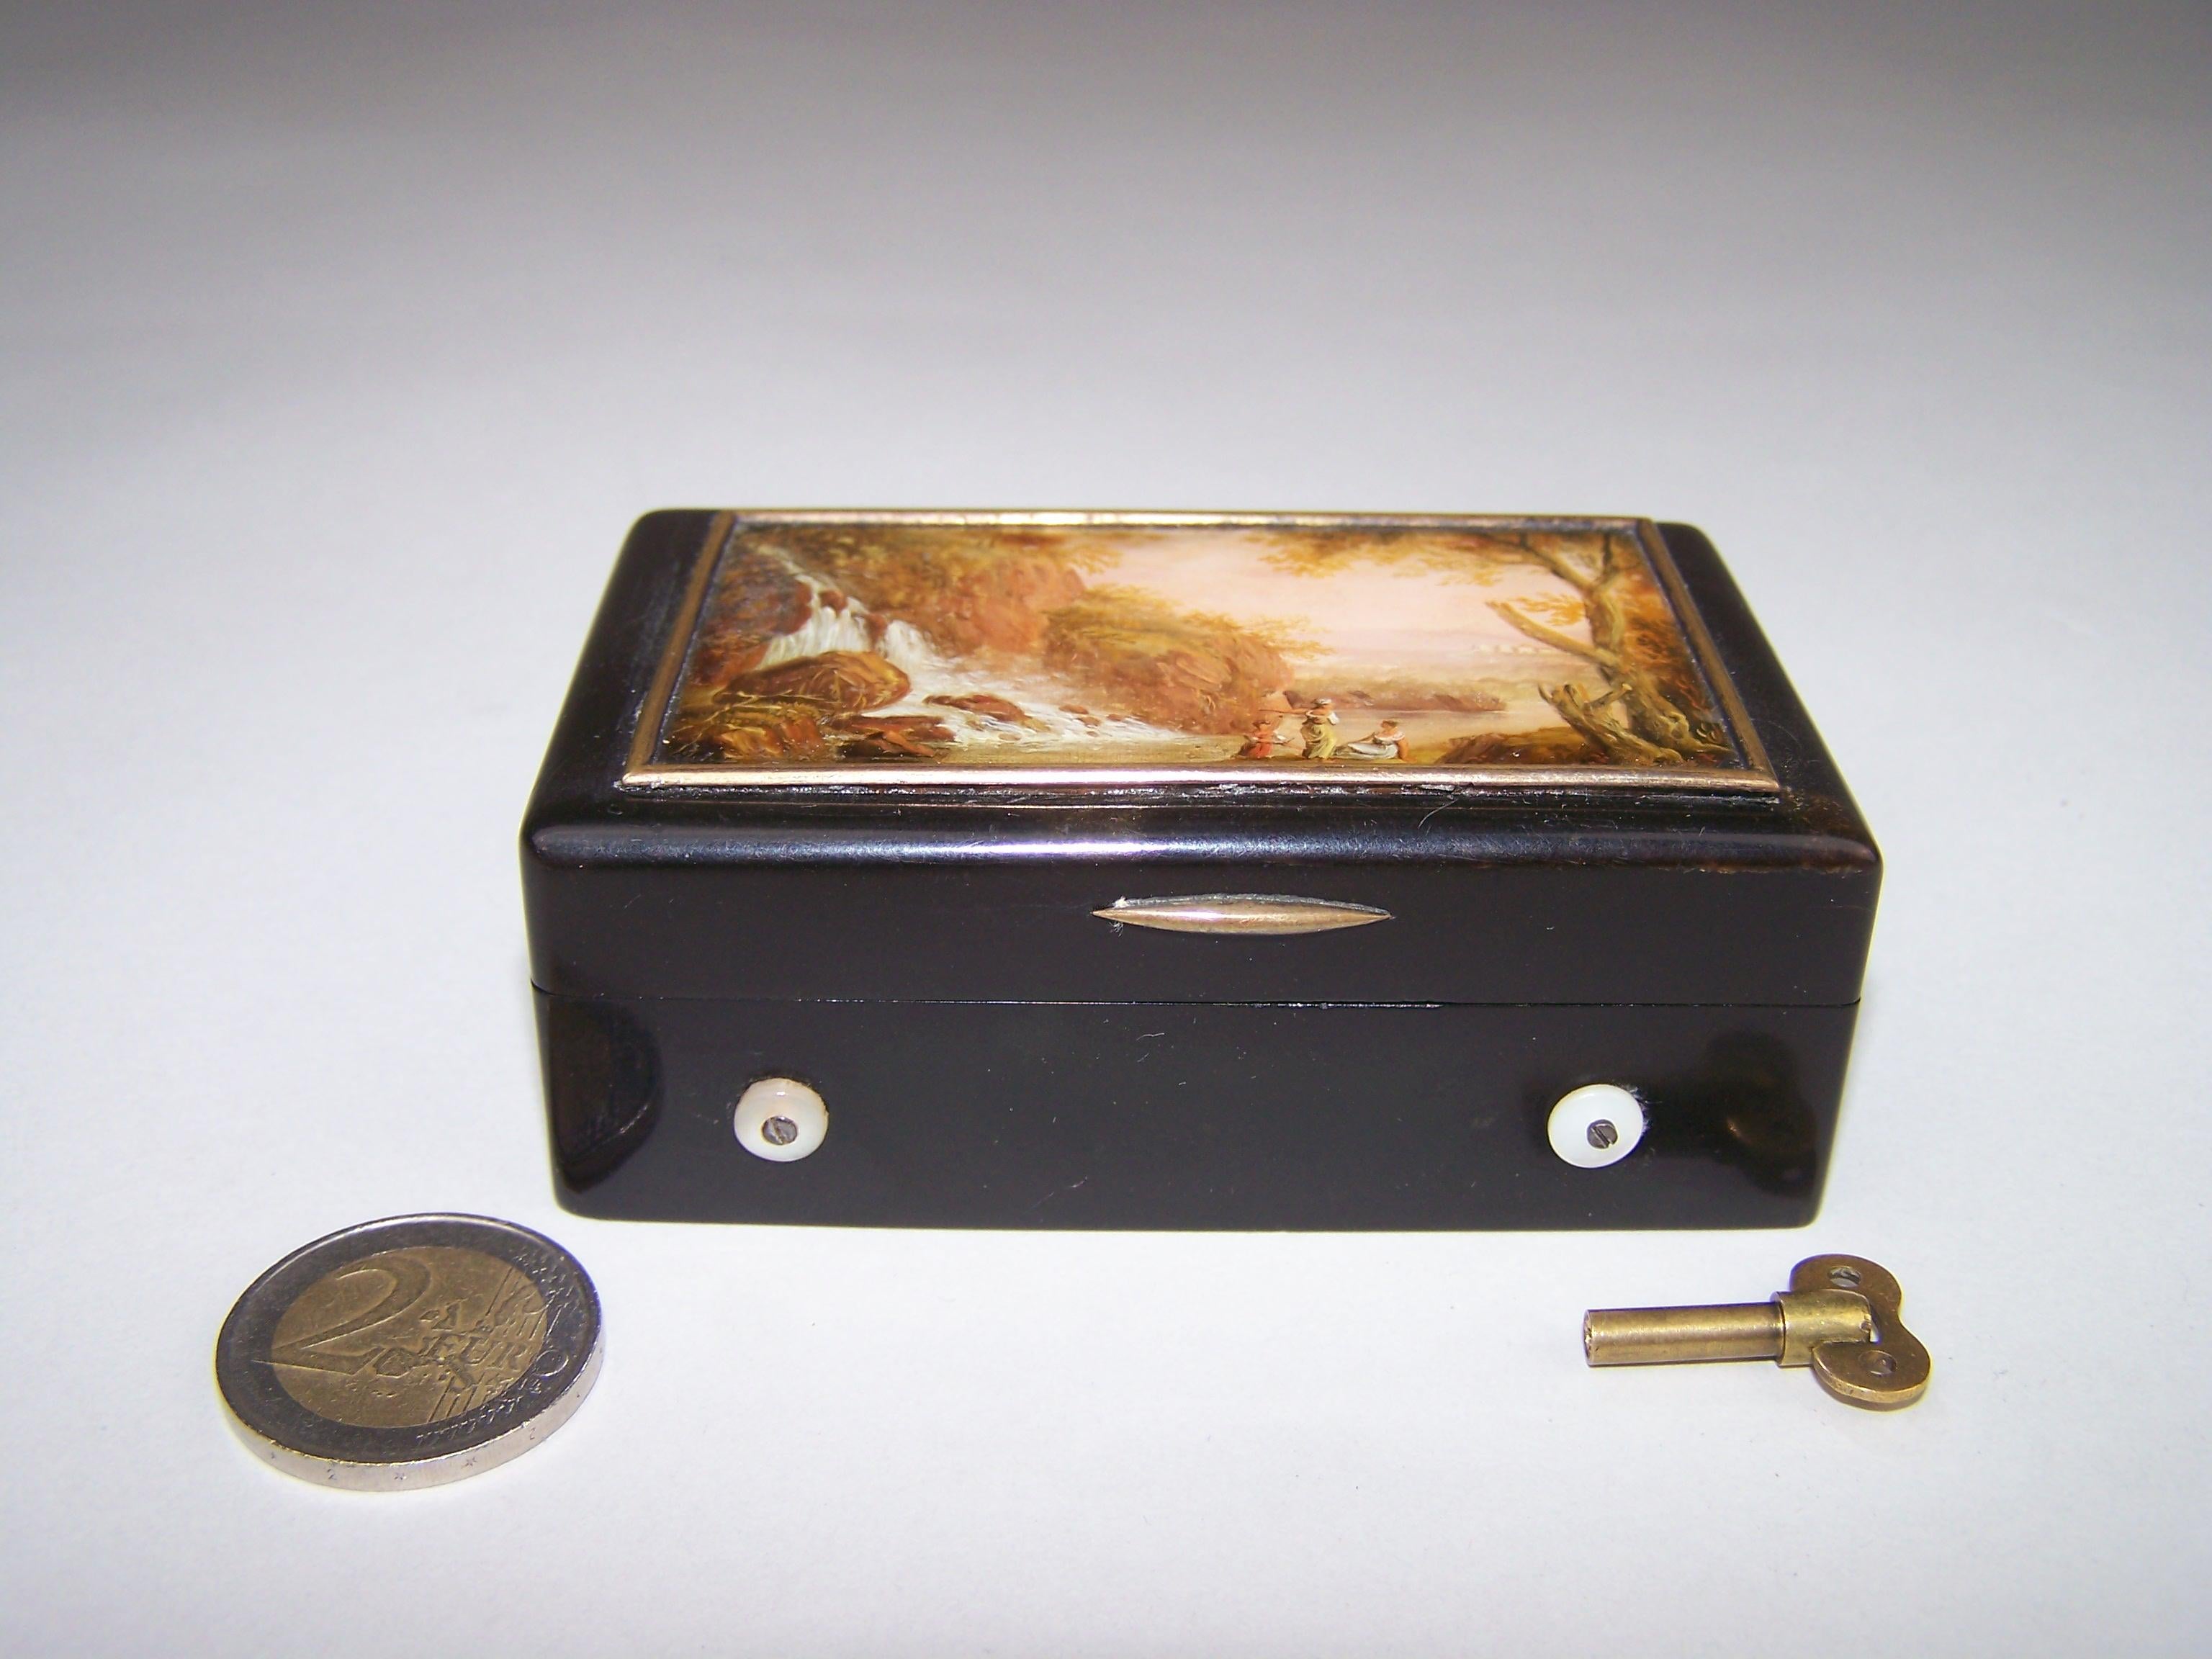 In der Schweiz Mitte des 19. Jahrhunderts hergestellte Spieldose.

Diese seltene Schnupftabakdose spielt 2 Melodien auf einem Kamm, der aus mehreren kleinen Teilen besteht. (Bis Mitte des 19. Jahrhunderts war es noch nicht möglich, einen Kamm aus 1